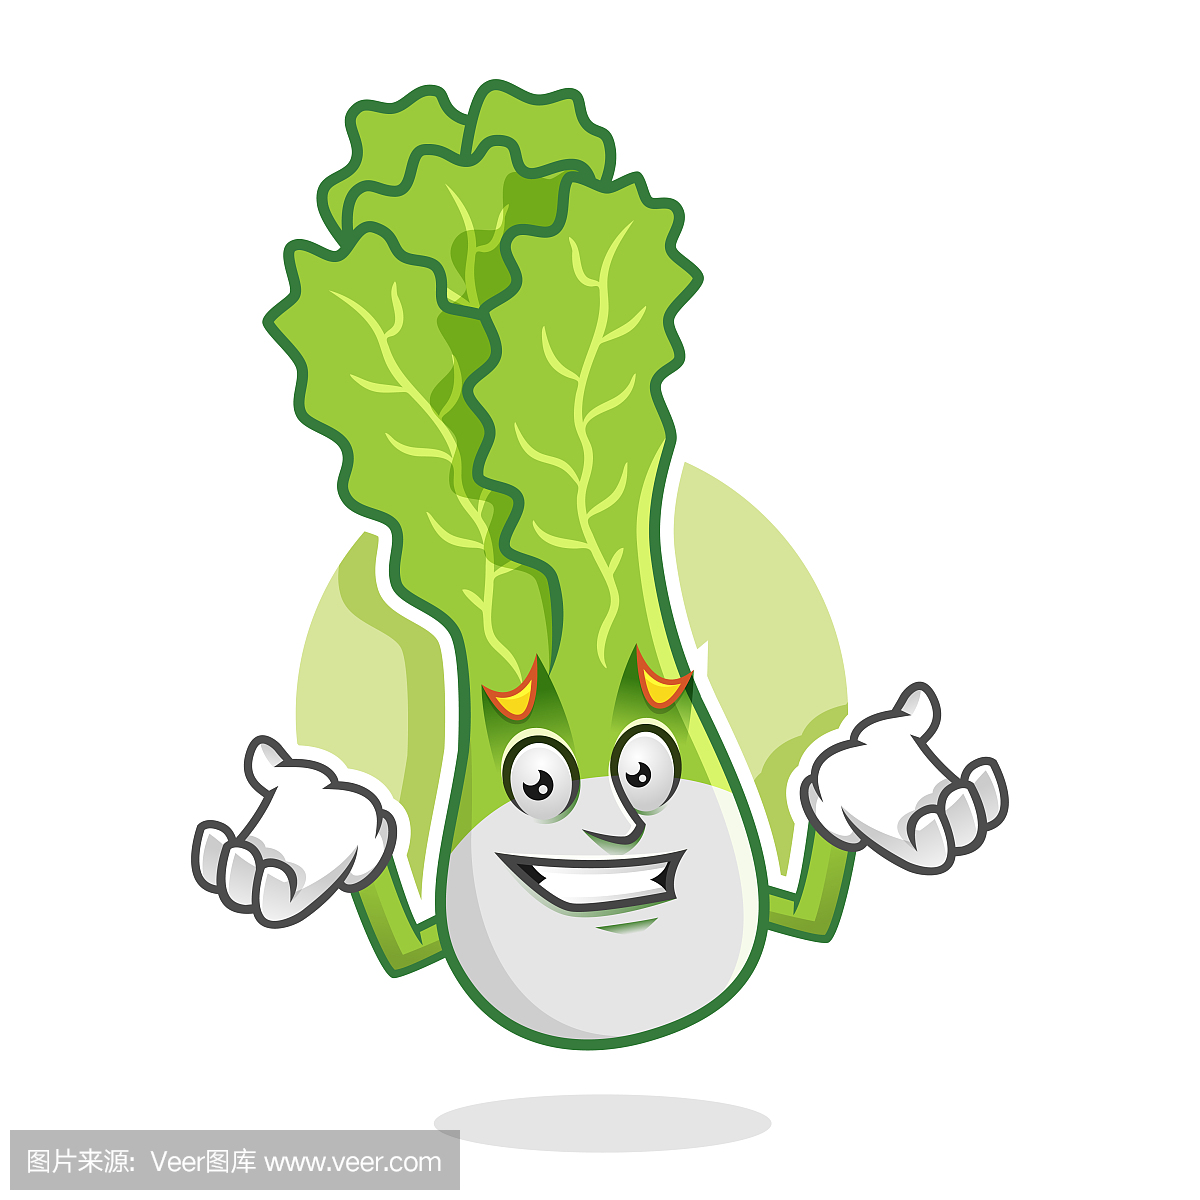 Feeling sorry lettuce mascot, lettuce character, 